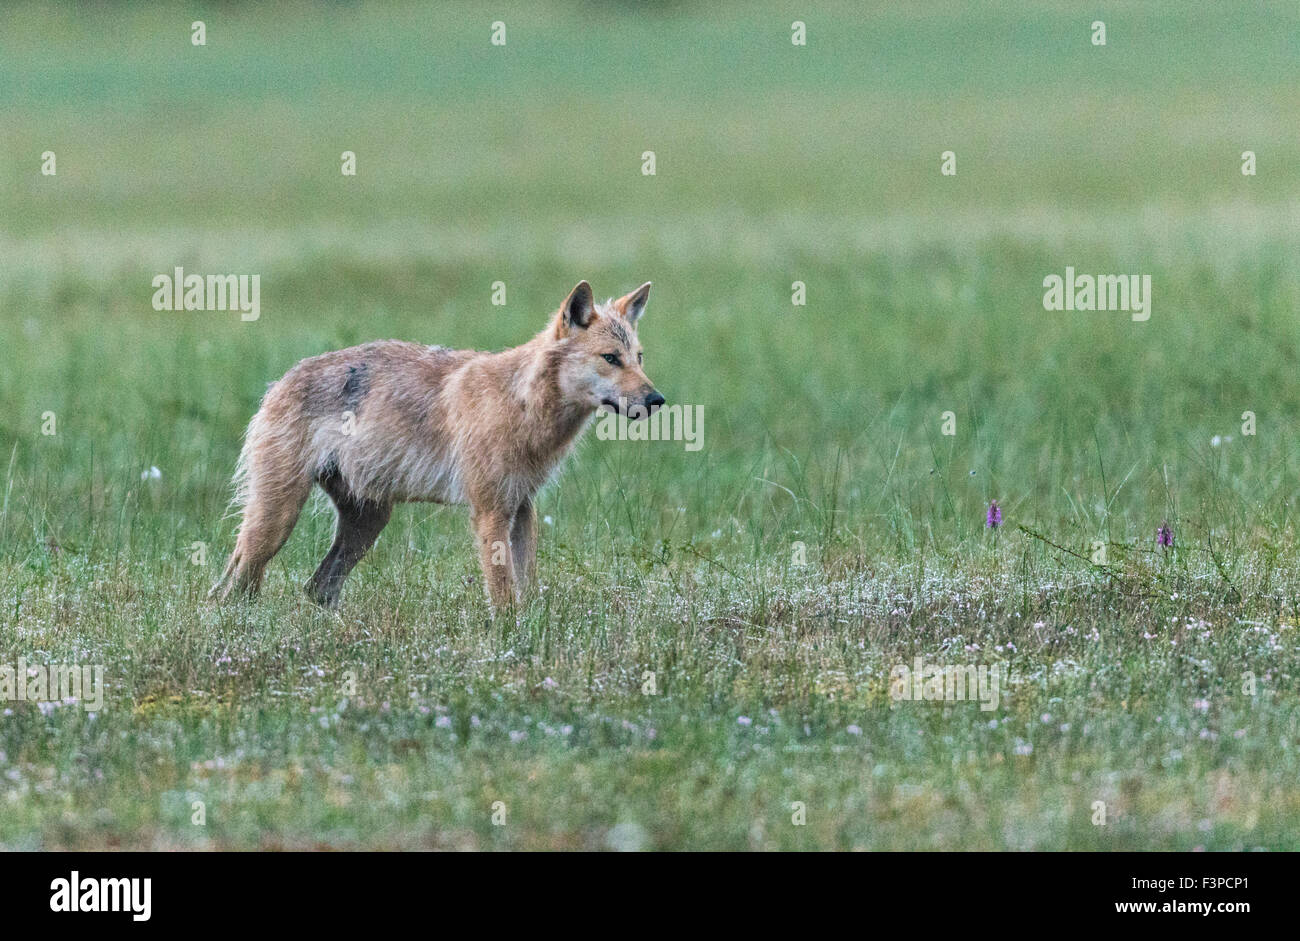 Grauer Wolf, Canis Lupus, stehend auf einem Moos in nassen Rasen und Lookingbeyond Kamera auf etwas, Kuhmo, Finnland Stockfoto